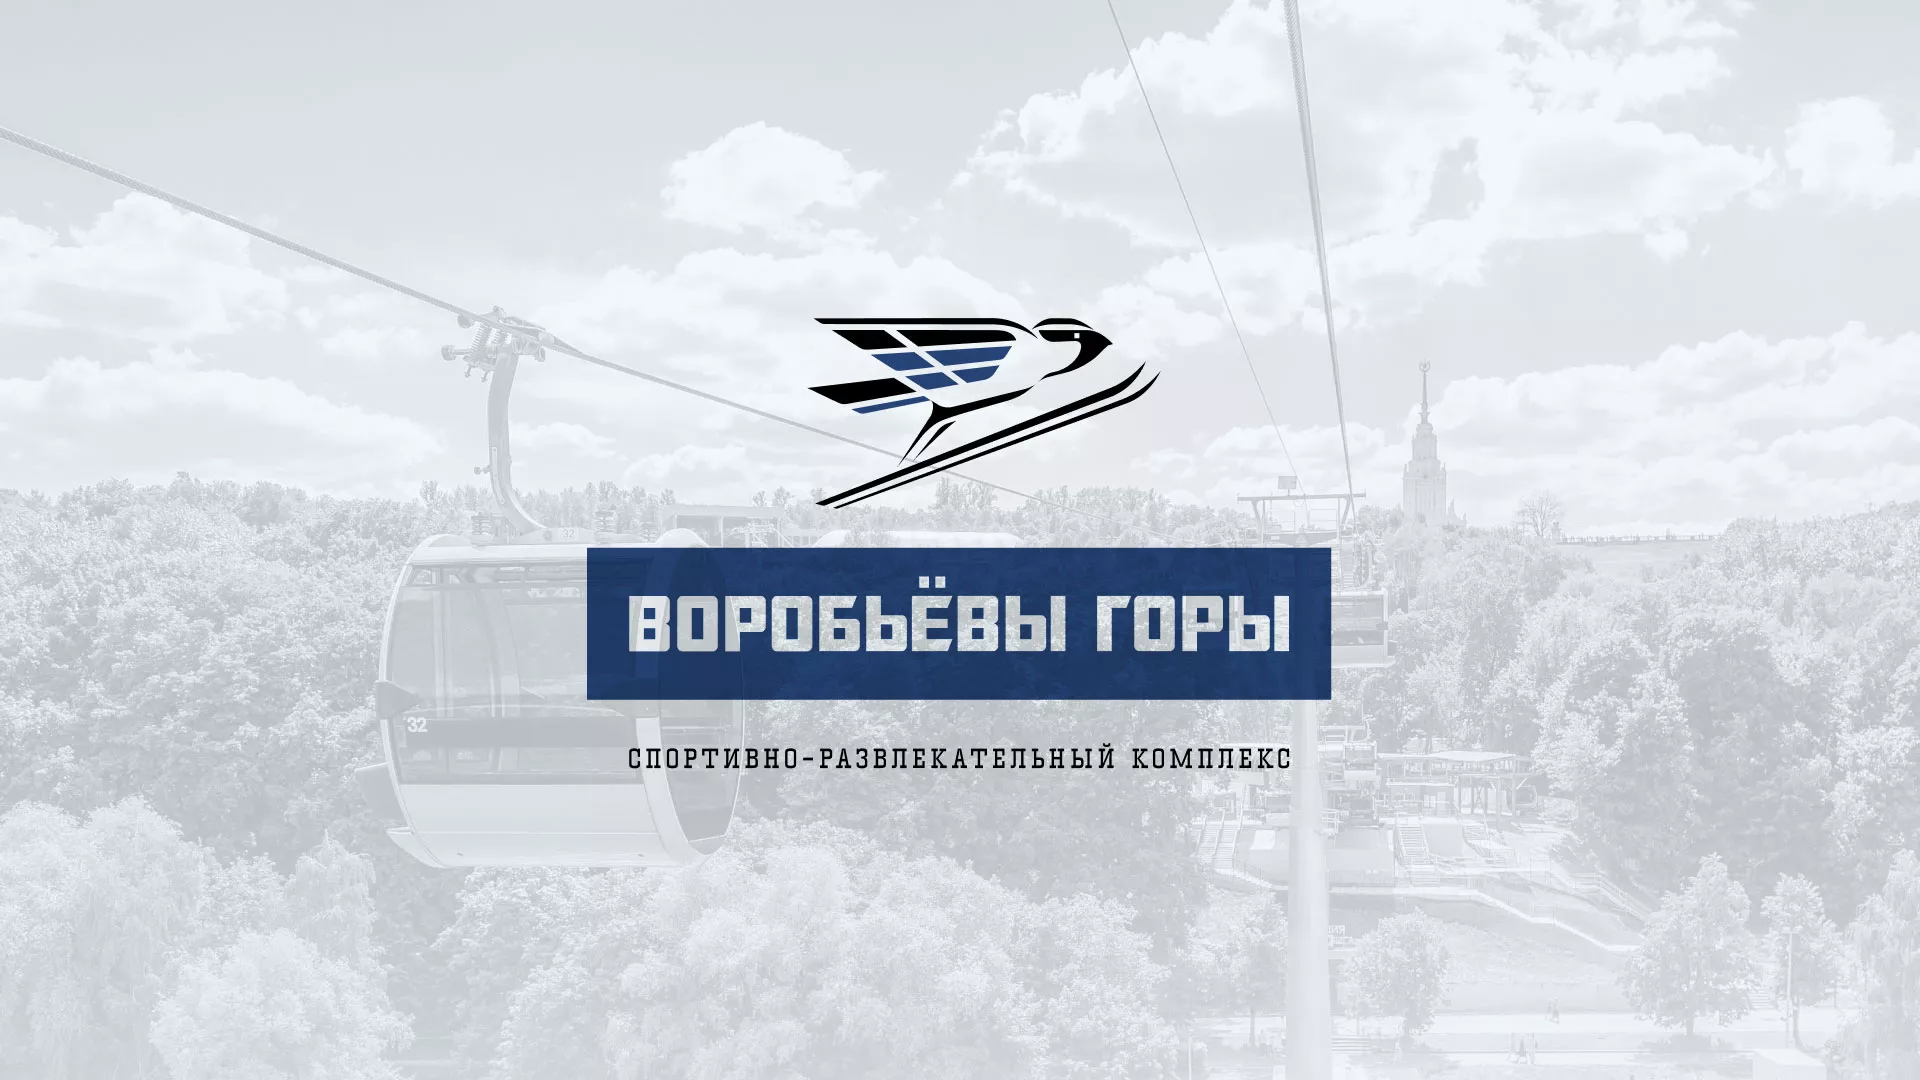 Разработка сайта в Артёме для спортивно-развлекательного комплекса «Воробьёвы горы»